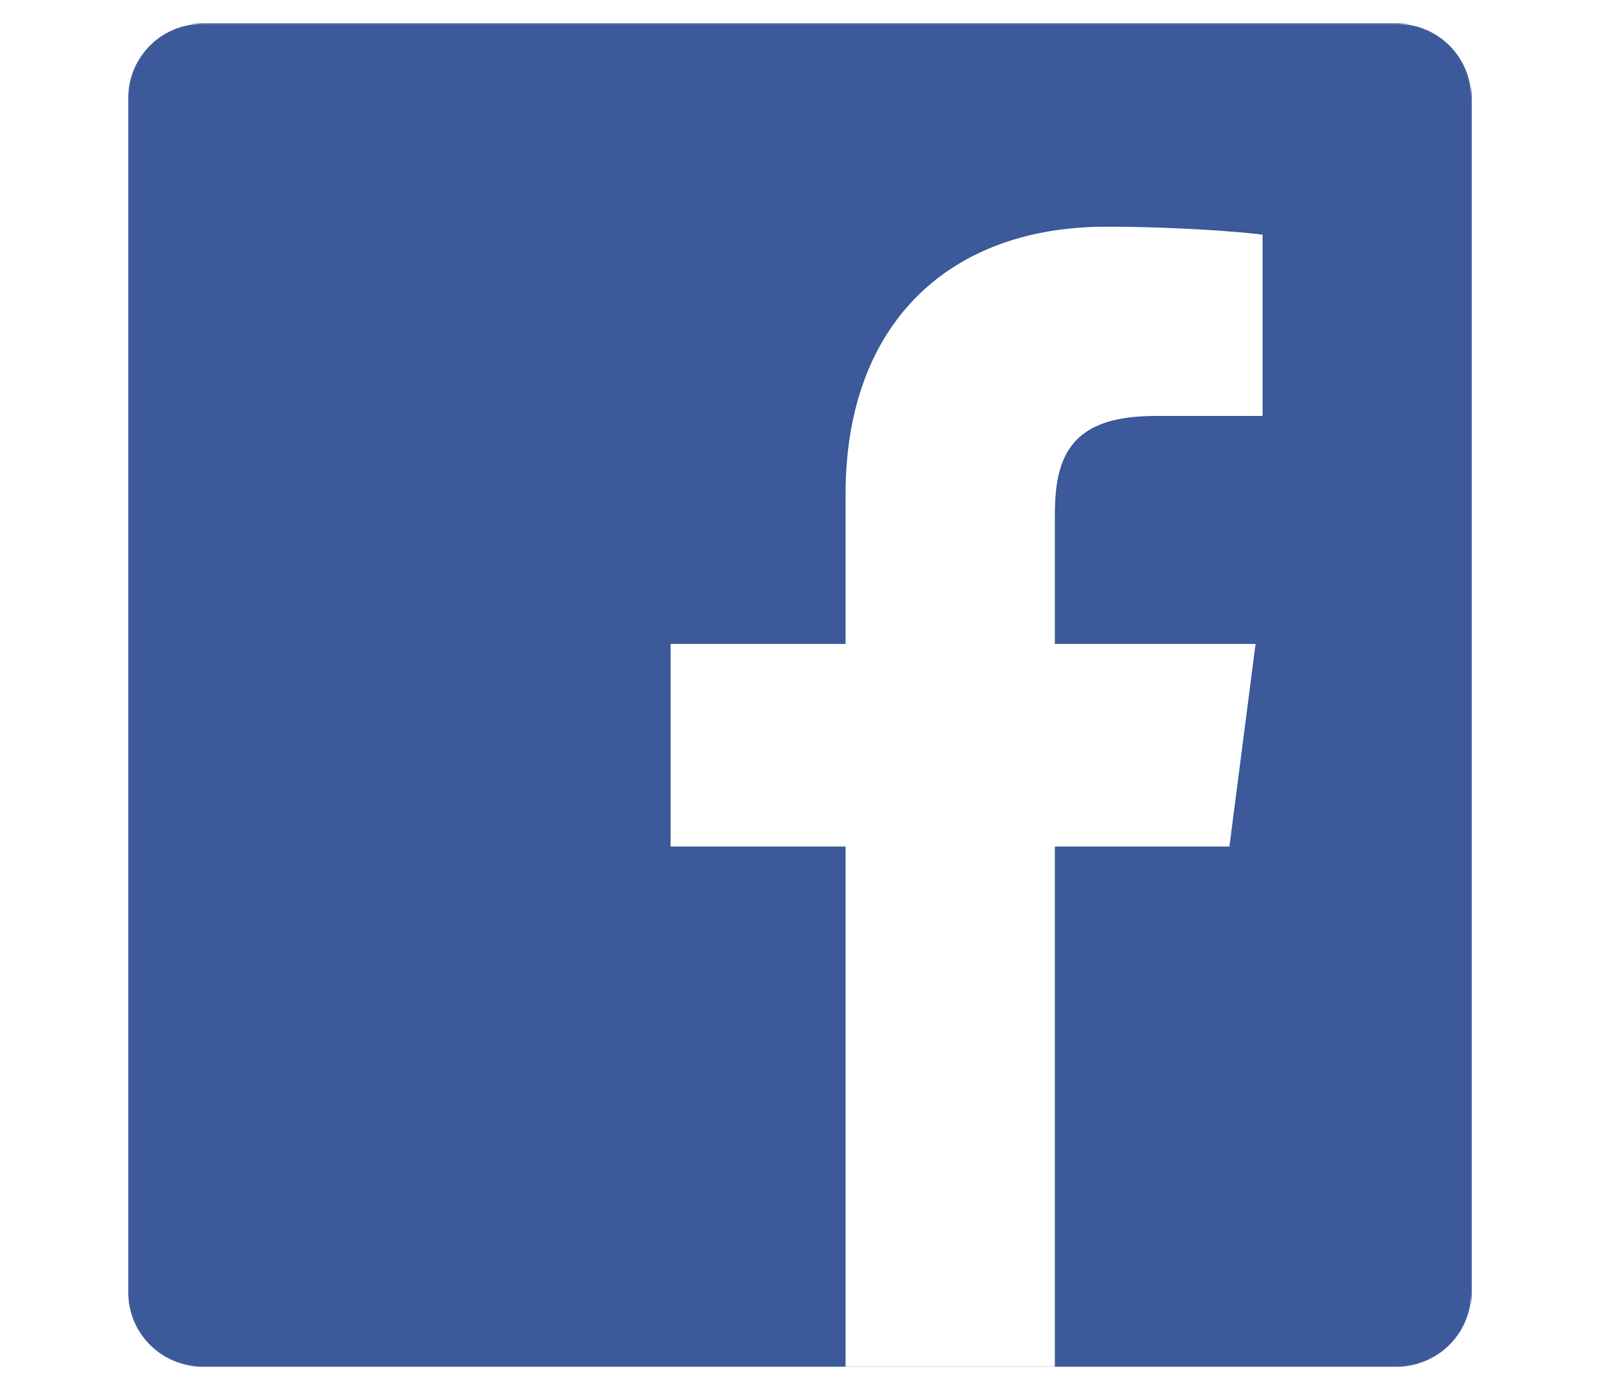 Résultat de recherche d'images pour "facebook logo""